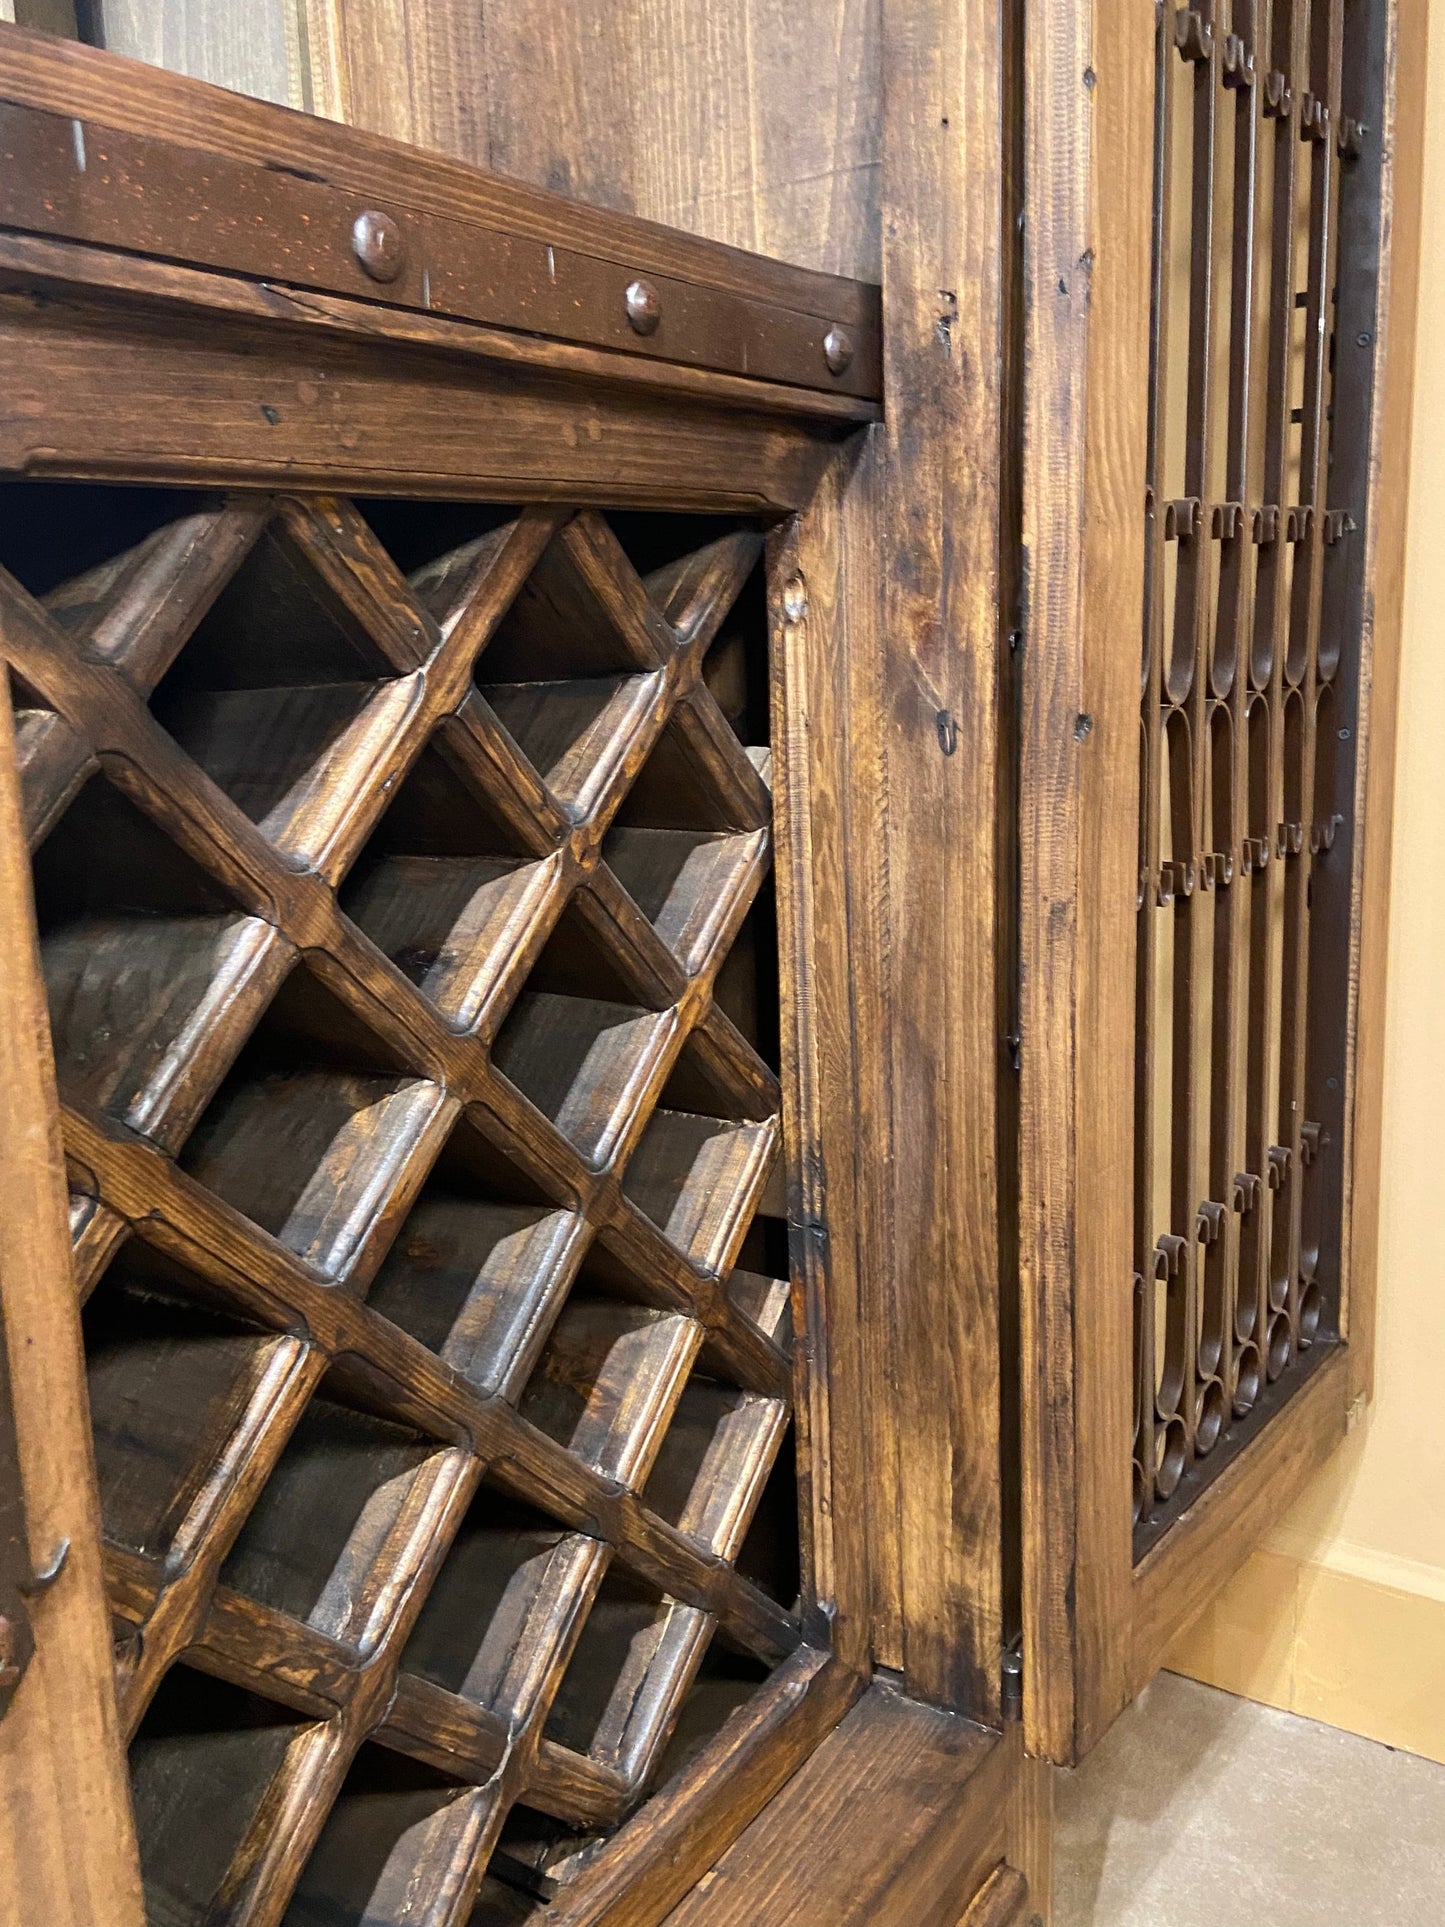 Close up of open door showing solid wood wine bottle storage. 